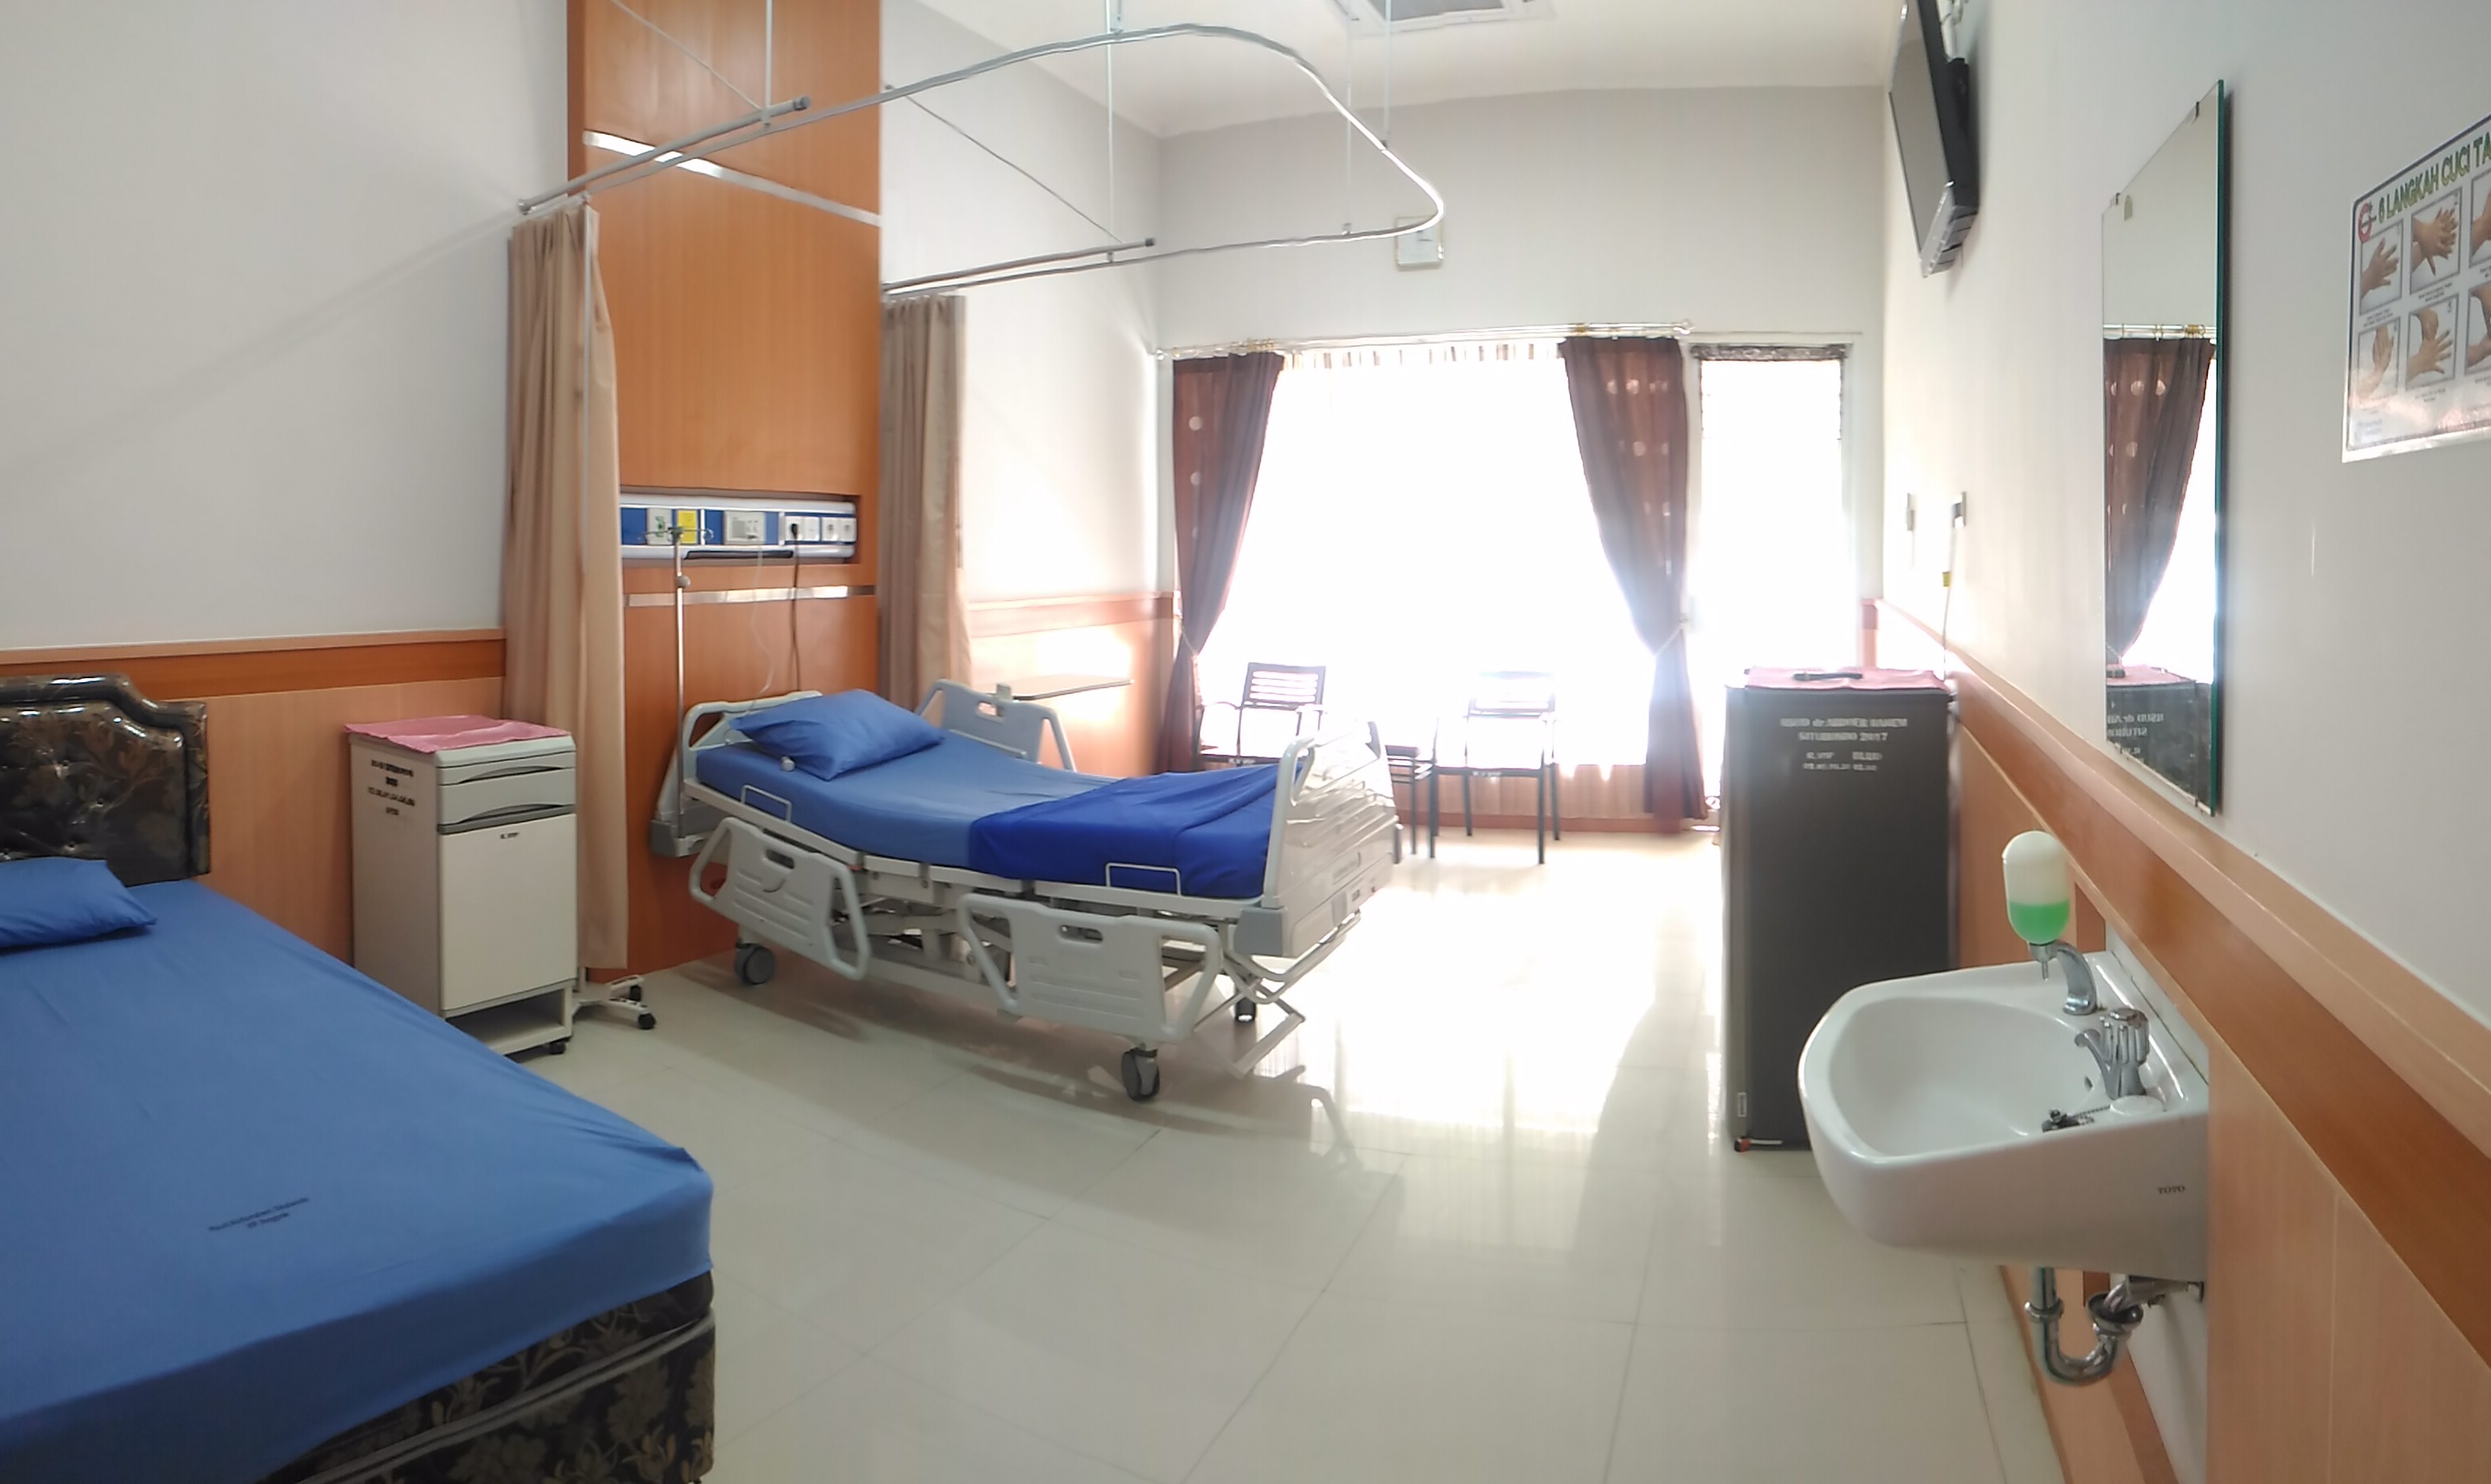 Rumah Sakit Umum Daerah dr. Abdoer Rahem | Rawat Inap